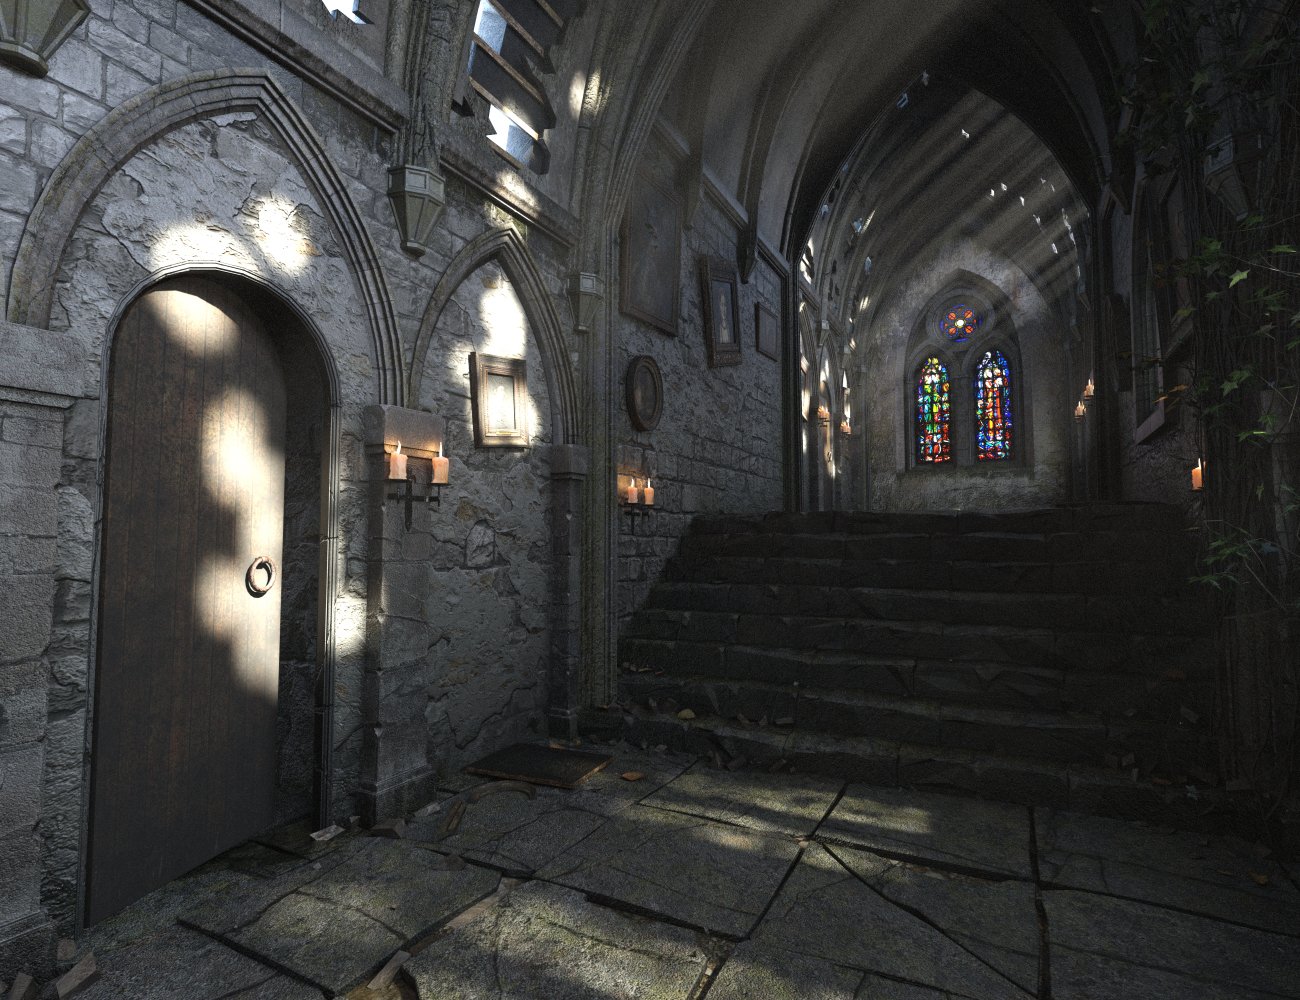 The Long Gallery Ruin by: Merlin Studios, 3D Models by Daz 3D